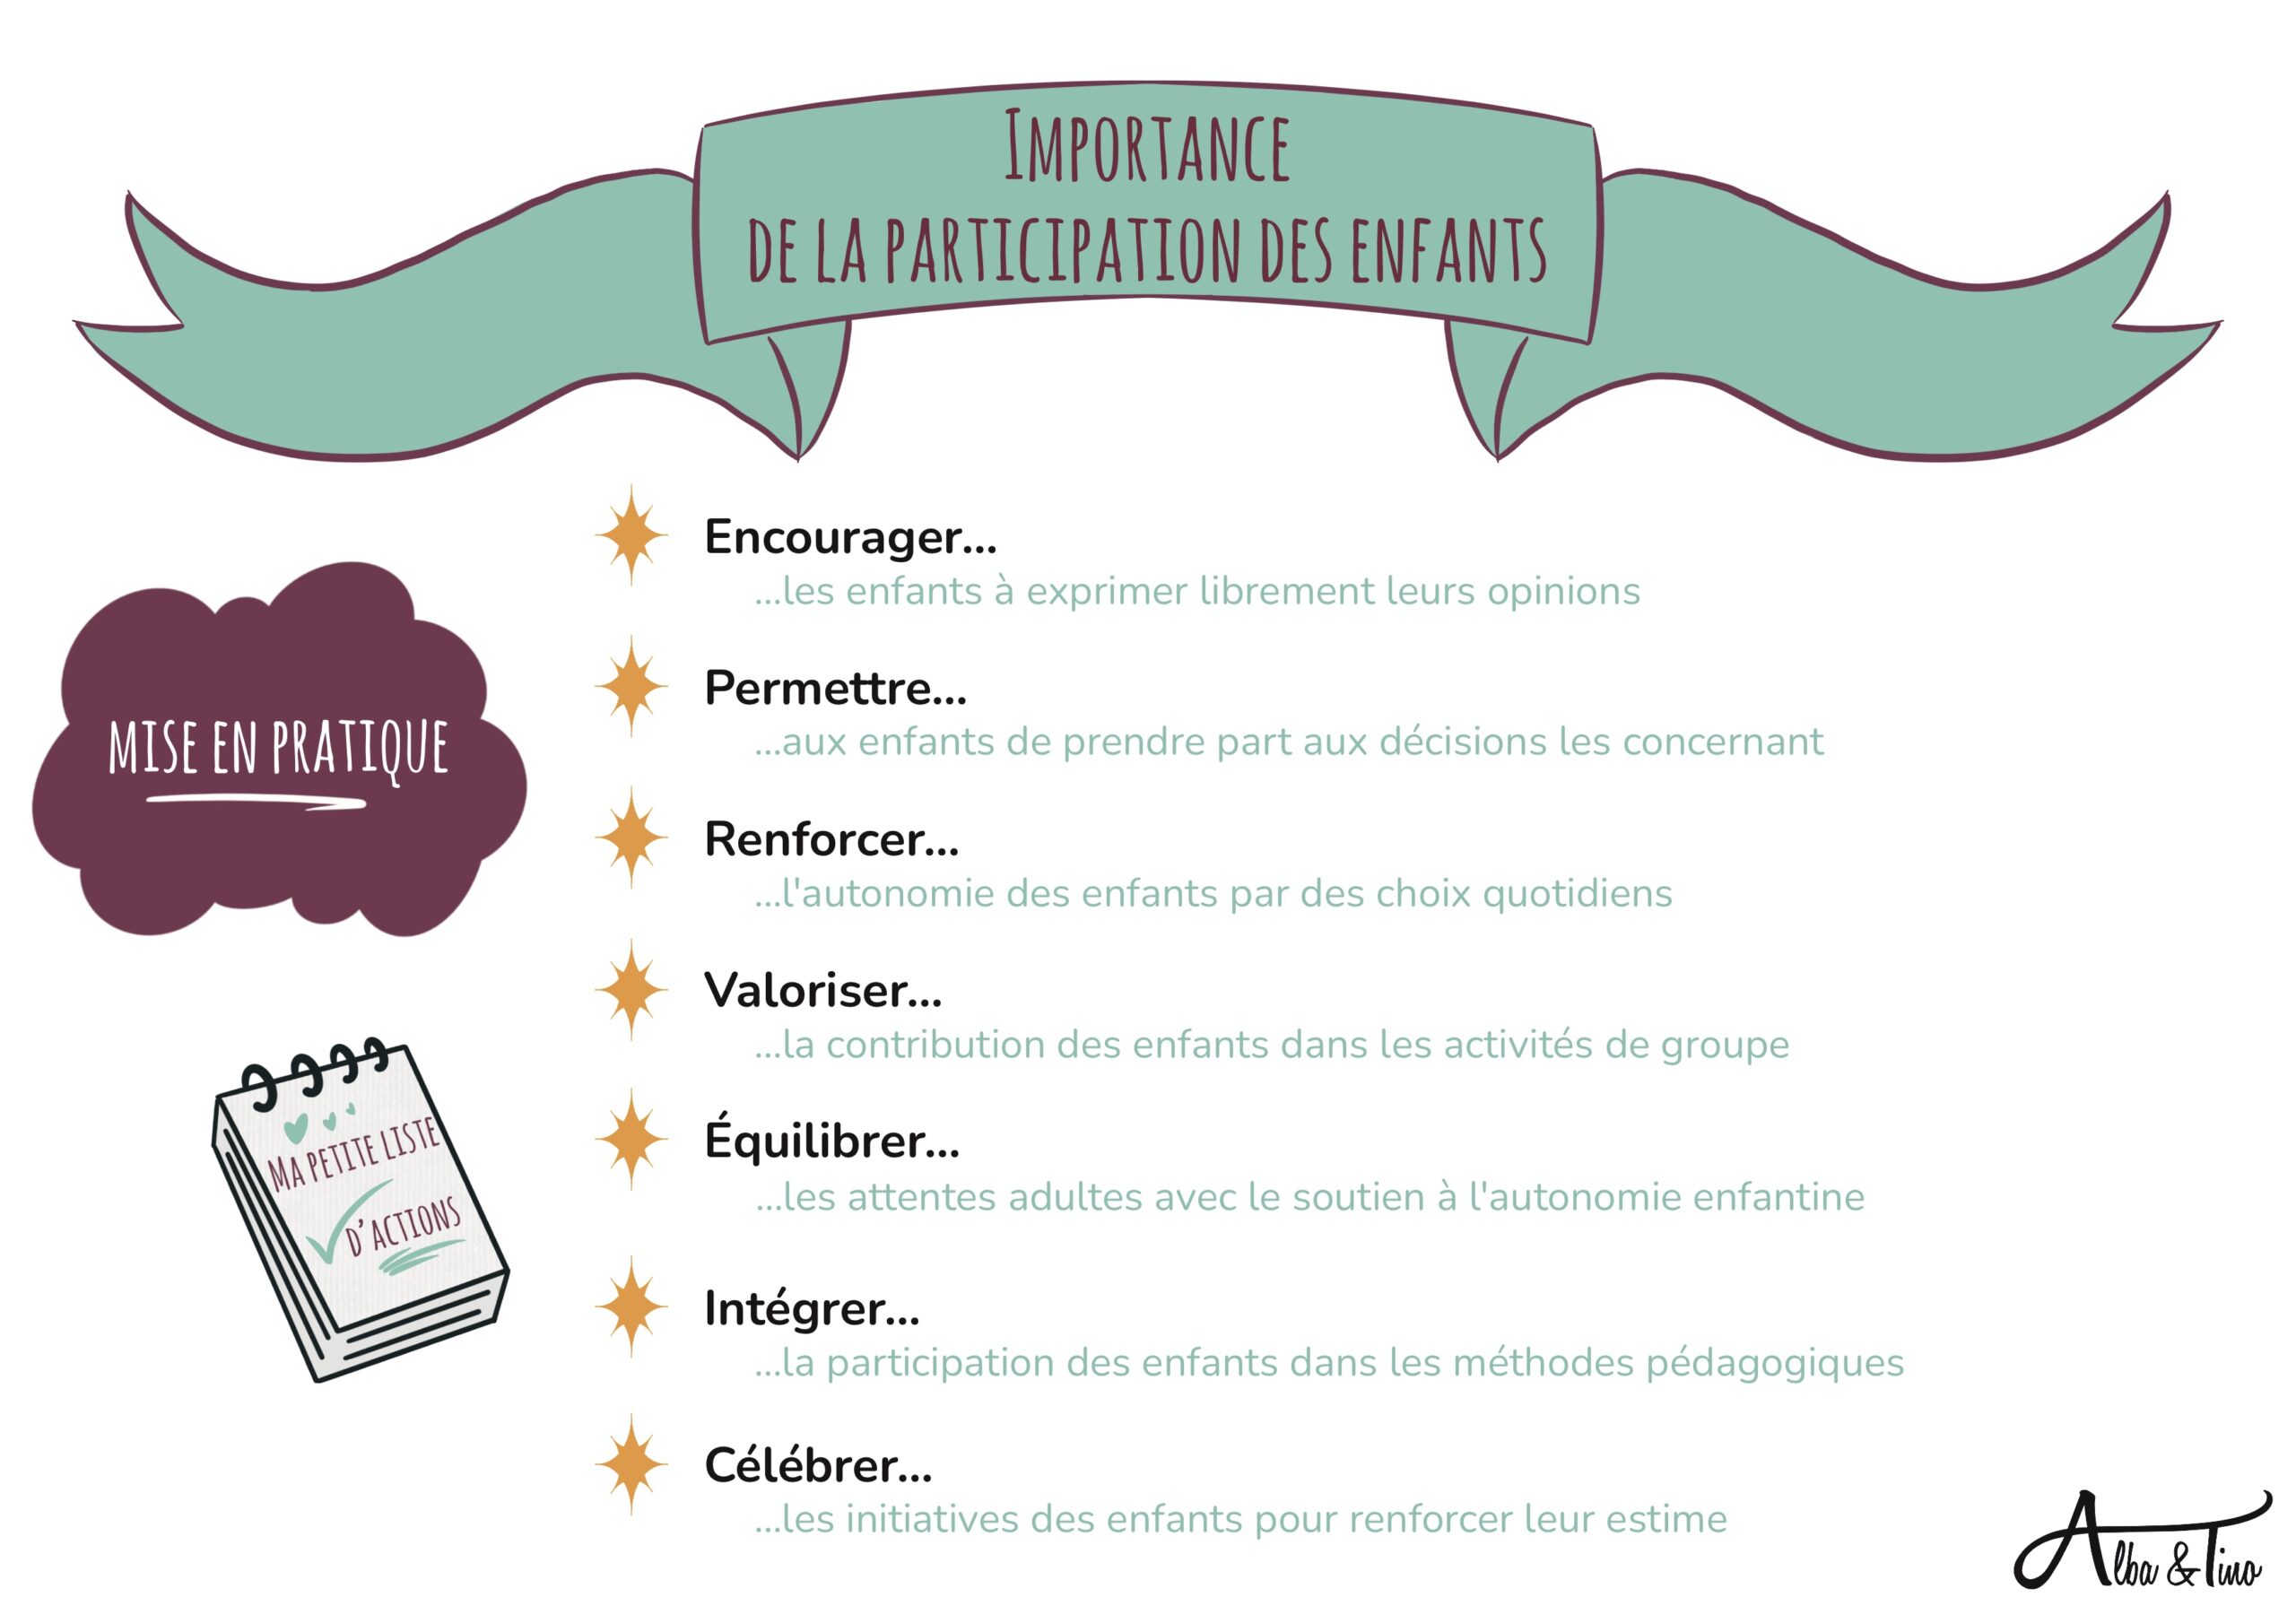 
Importance_De_La_Participation_Des_Enfants